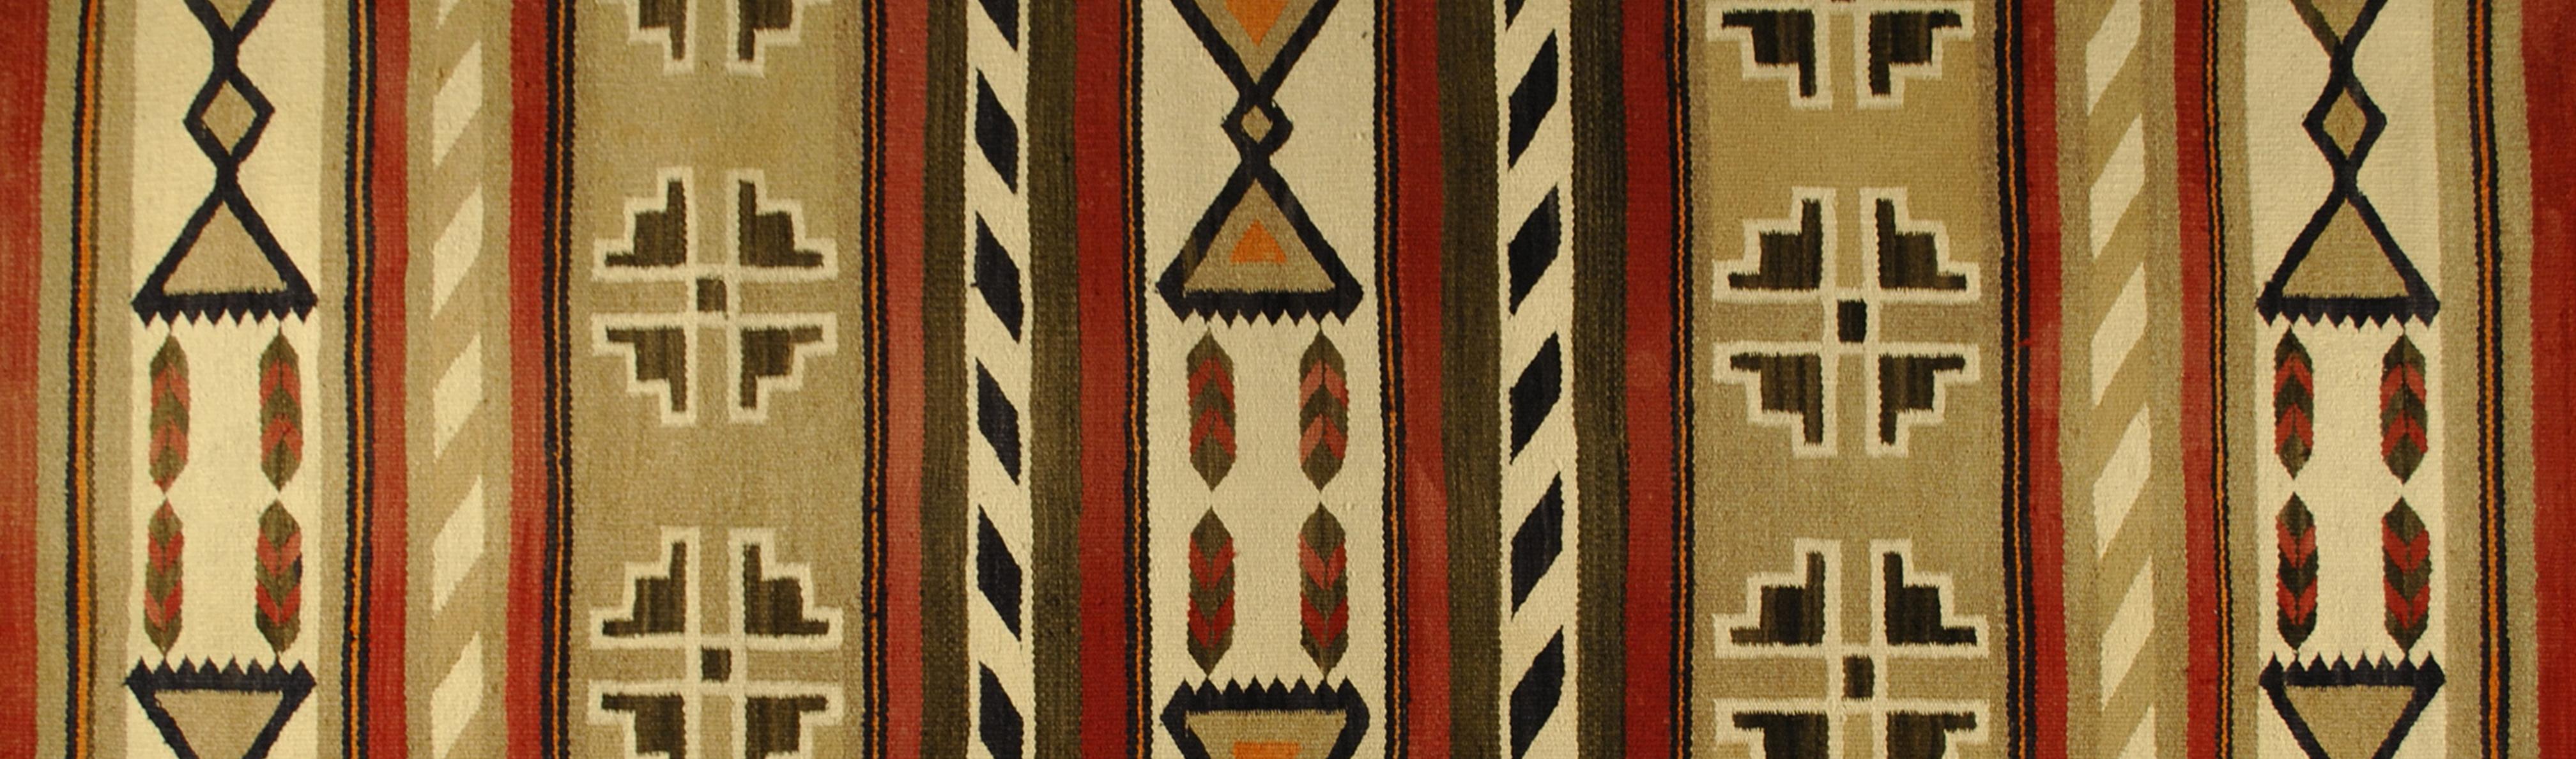 A woven Navajo textile